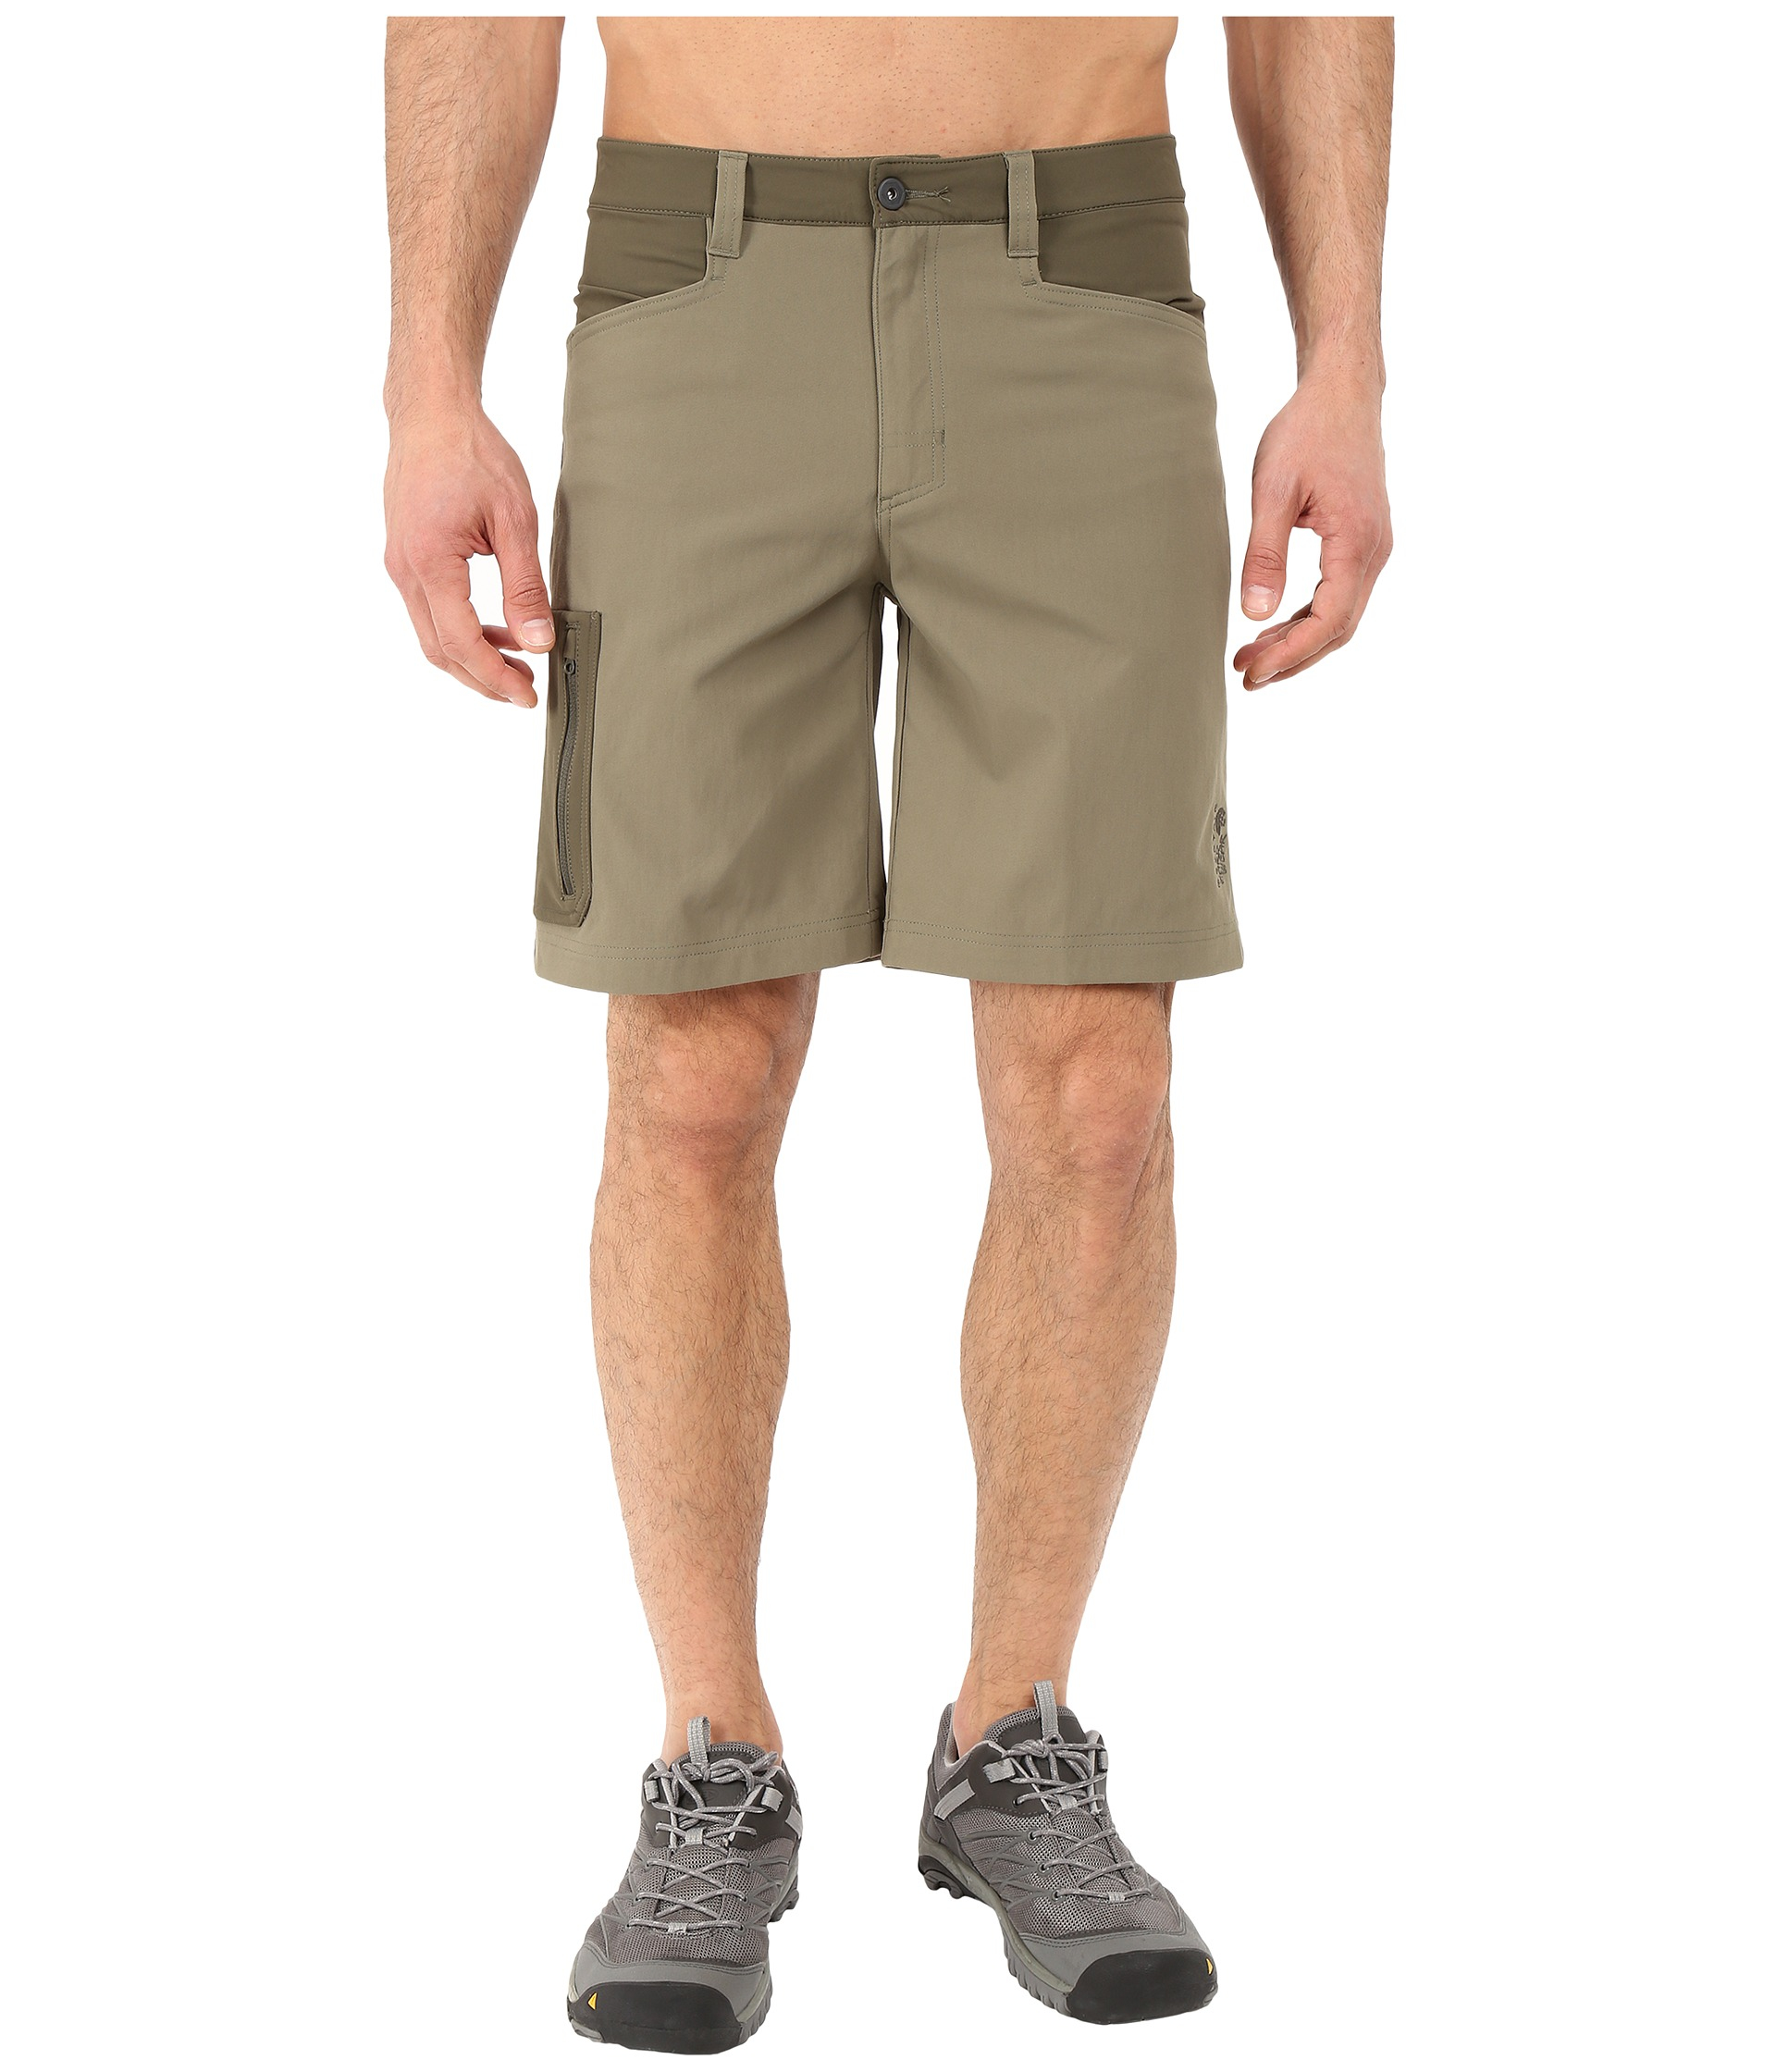 Lyst Mountain hardwear Sawhorse™ Shorts in Natural for Men